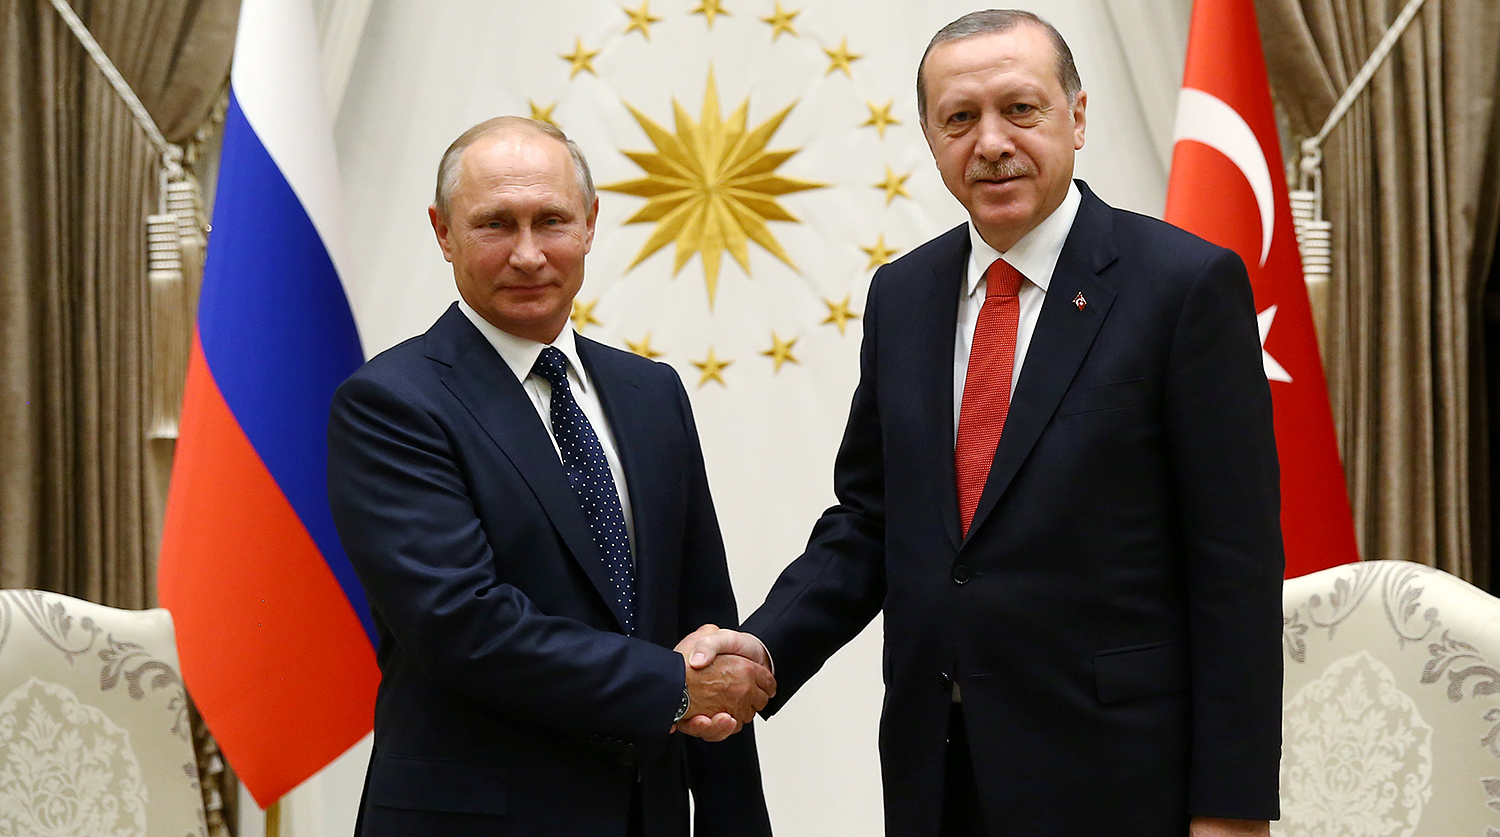 Аналитик: Переговоры Эрдогана и Путина по ситуации в Идлибе крайне важны